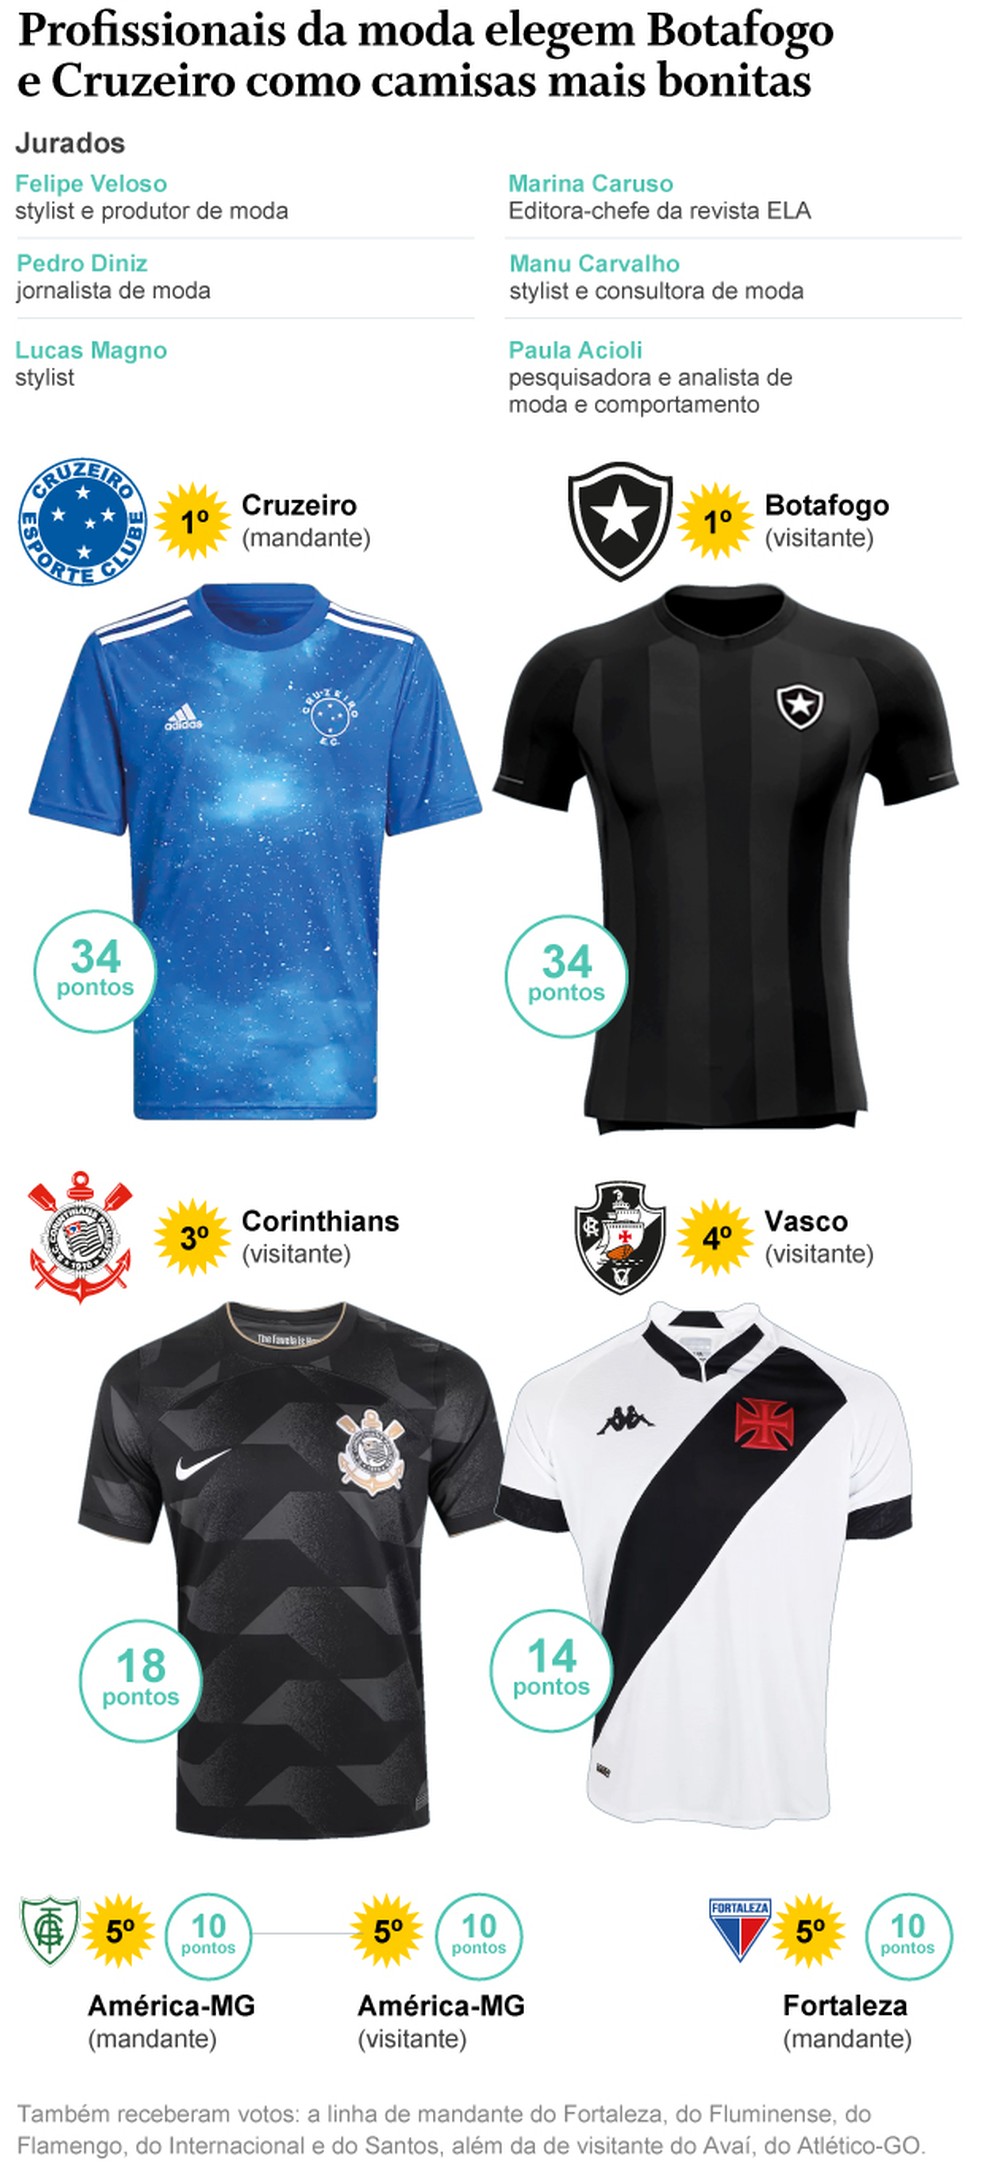 Profissionais da moda elegem camisas de Cruzeiro, Botafogo